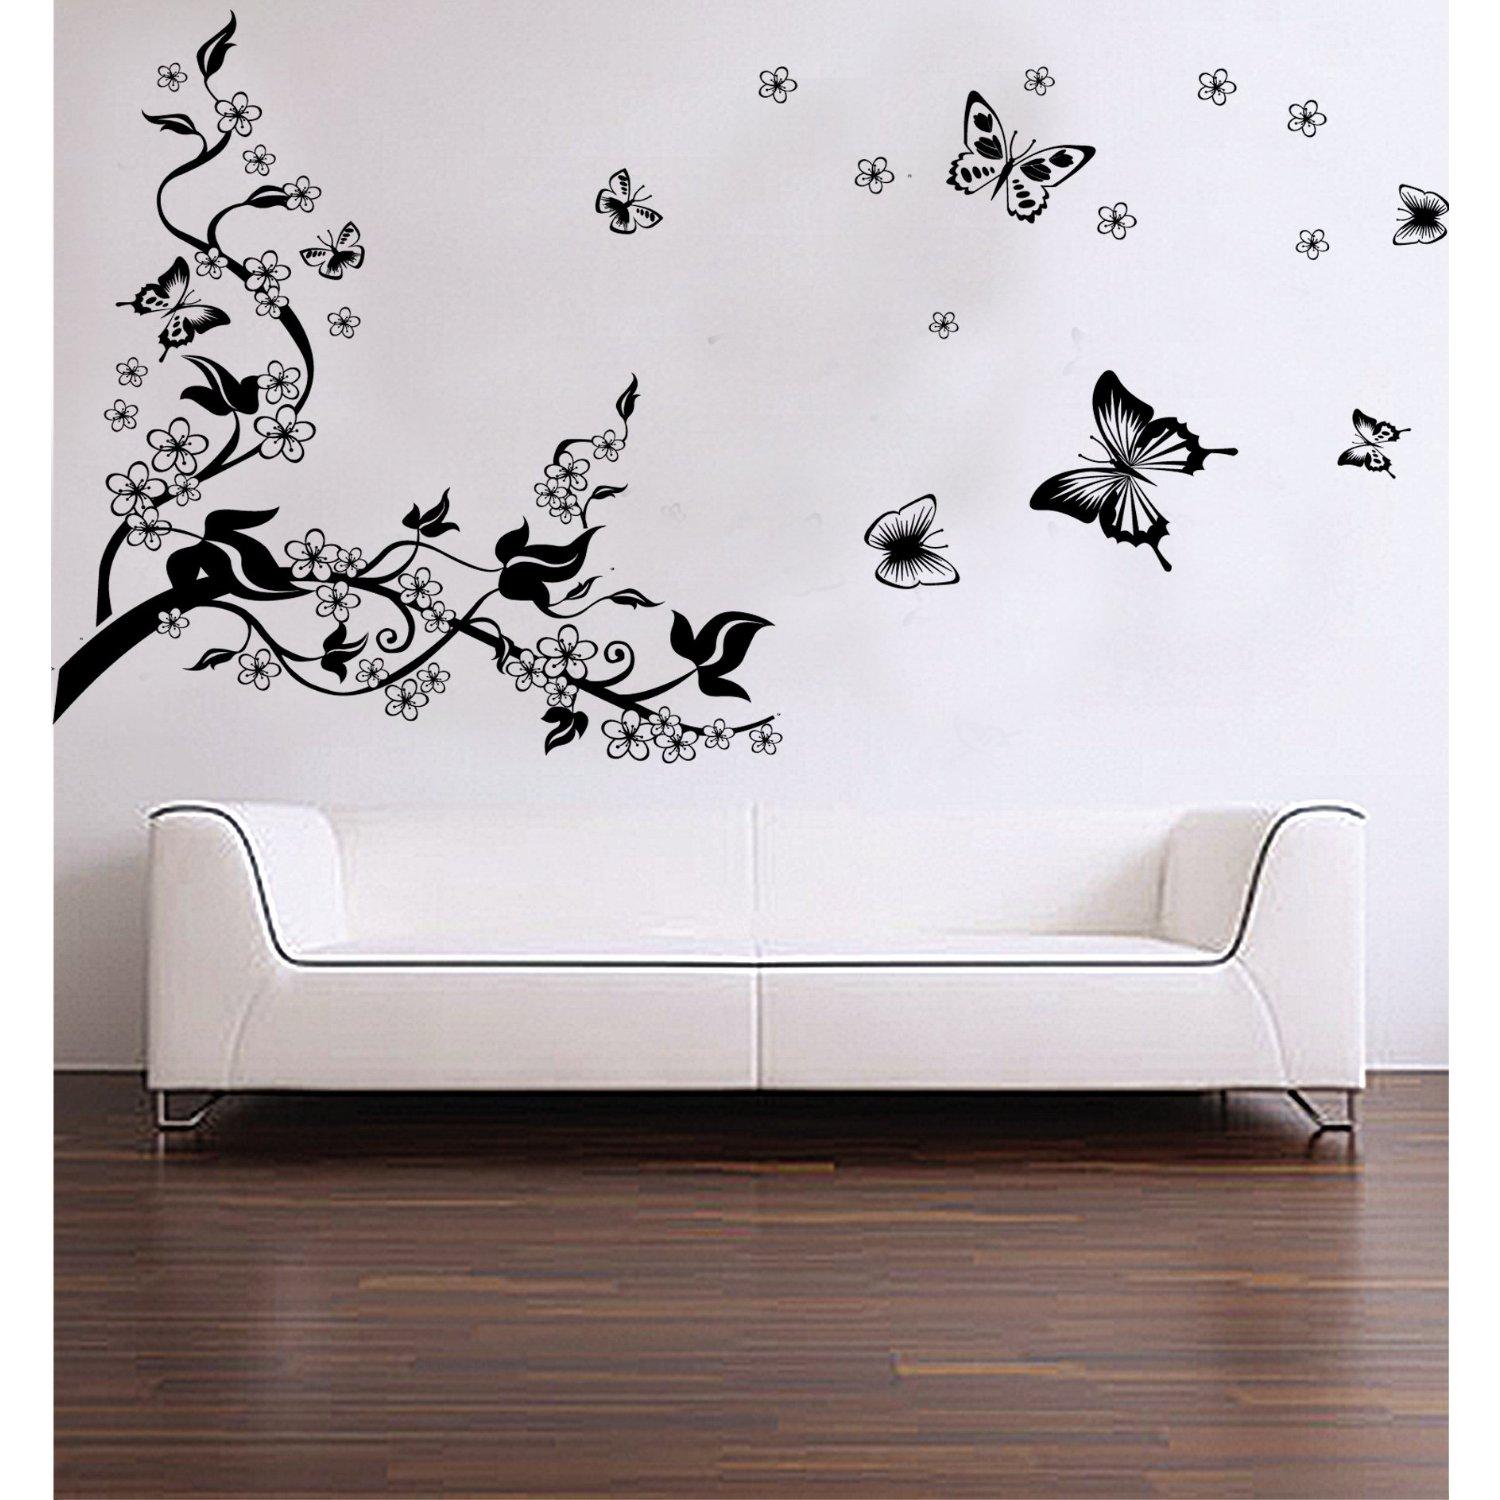 Wall Sticker Wallpaper Butterfly S